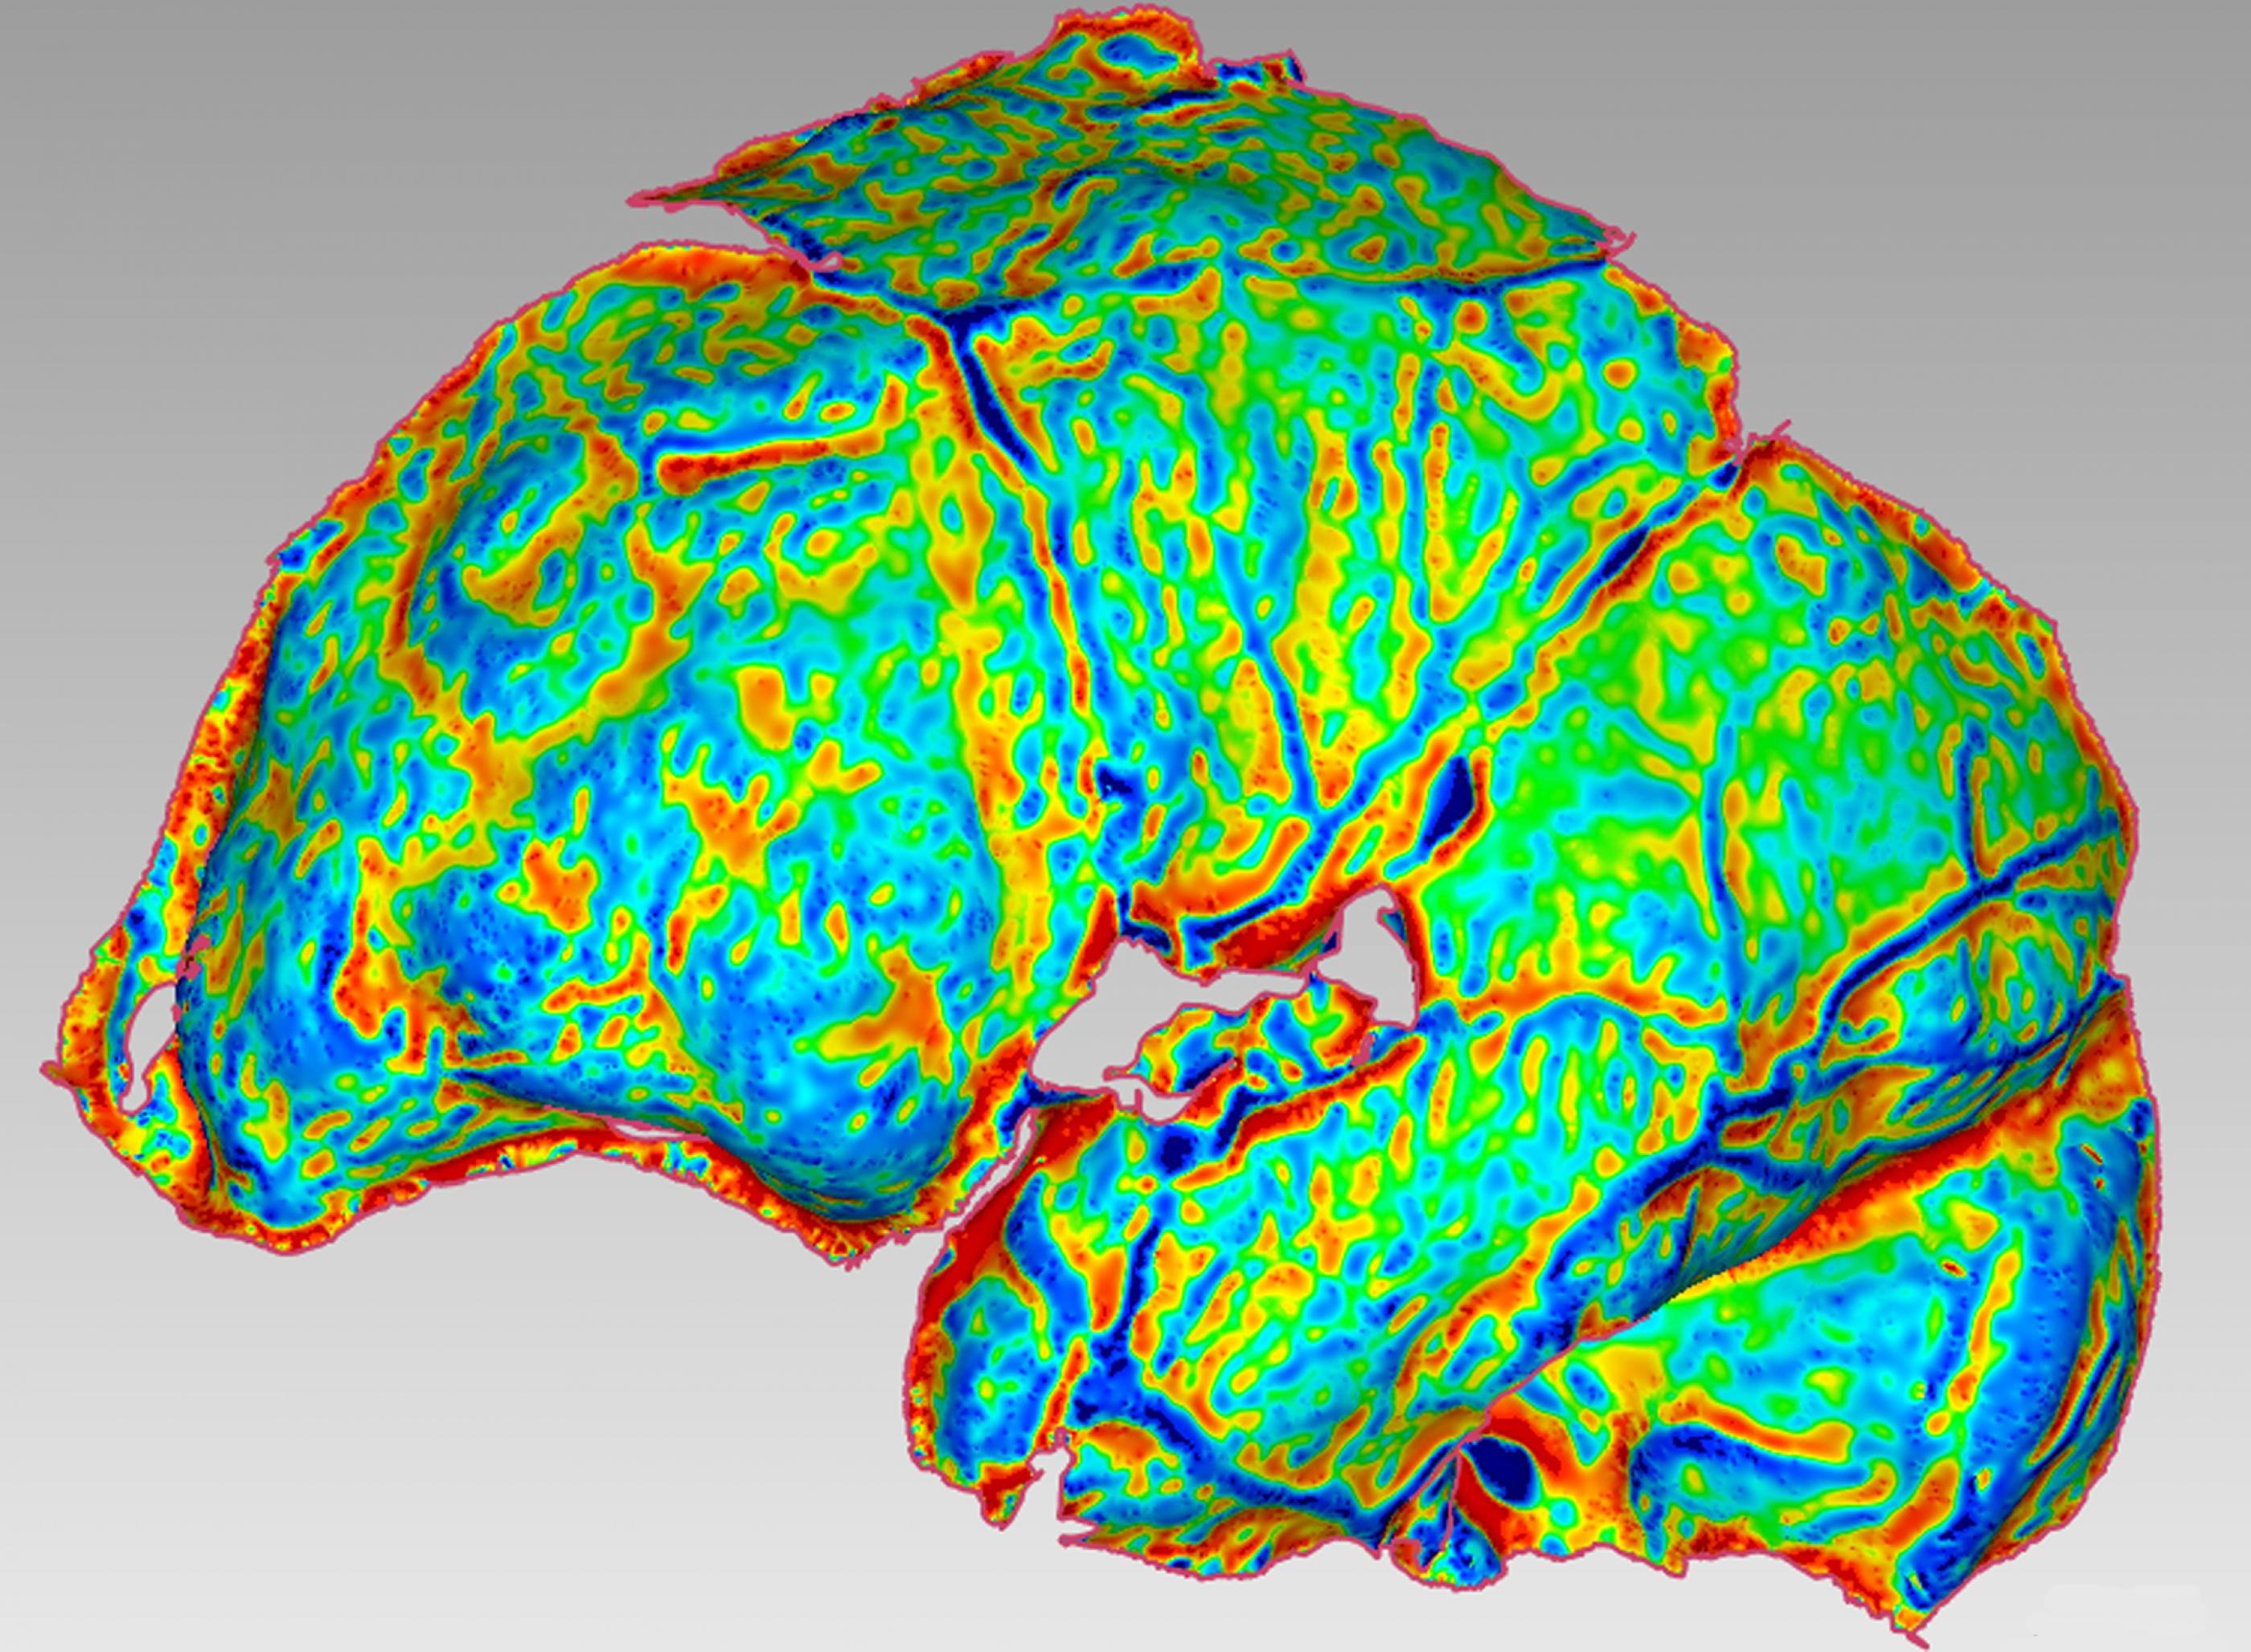 Das Bild zeigt die graphische Darstellung der Bögen und Wölbungen eines Gehirns. In überwiegend grünen, blauen und gelben Farben sind die verschiedenen Strukturen zu erkennen.